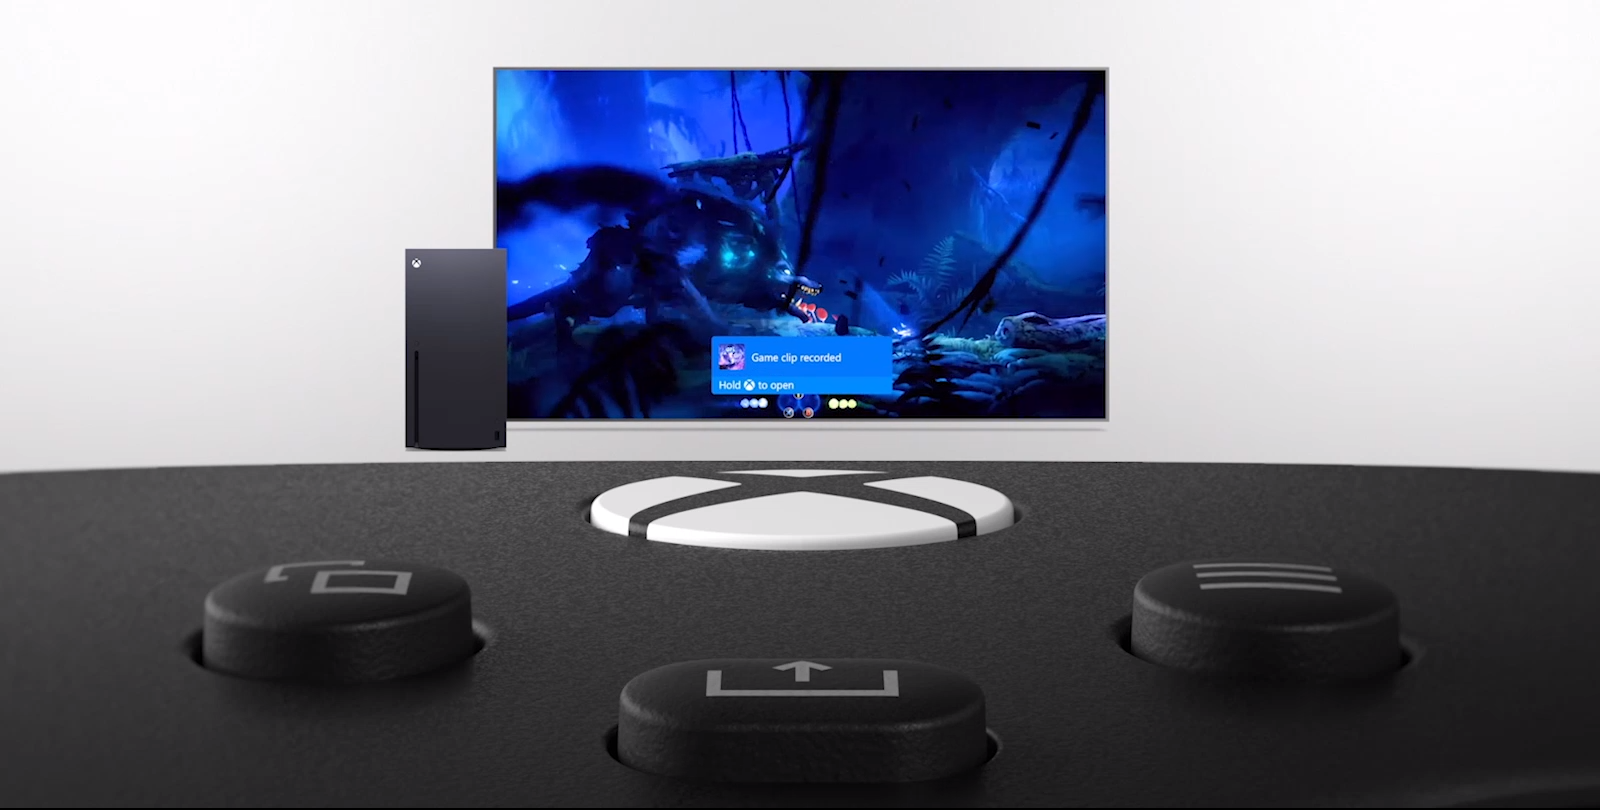 Tay cầm chơi game Xbox Series X Controller - Carbon Black tích hợp thêm nút Share chuyên dụng